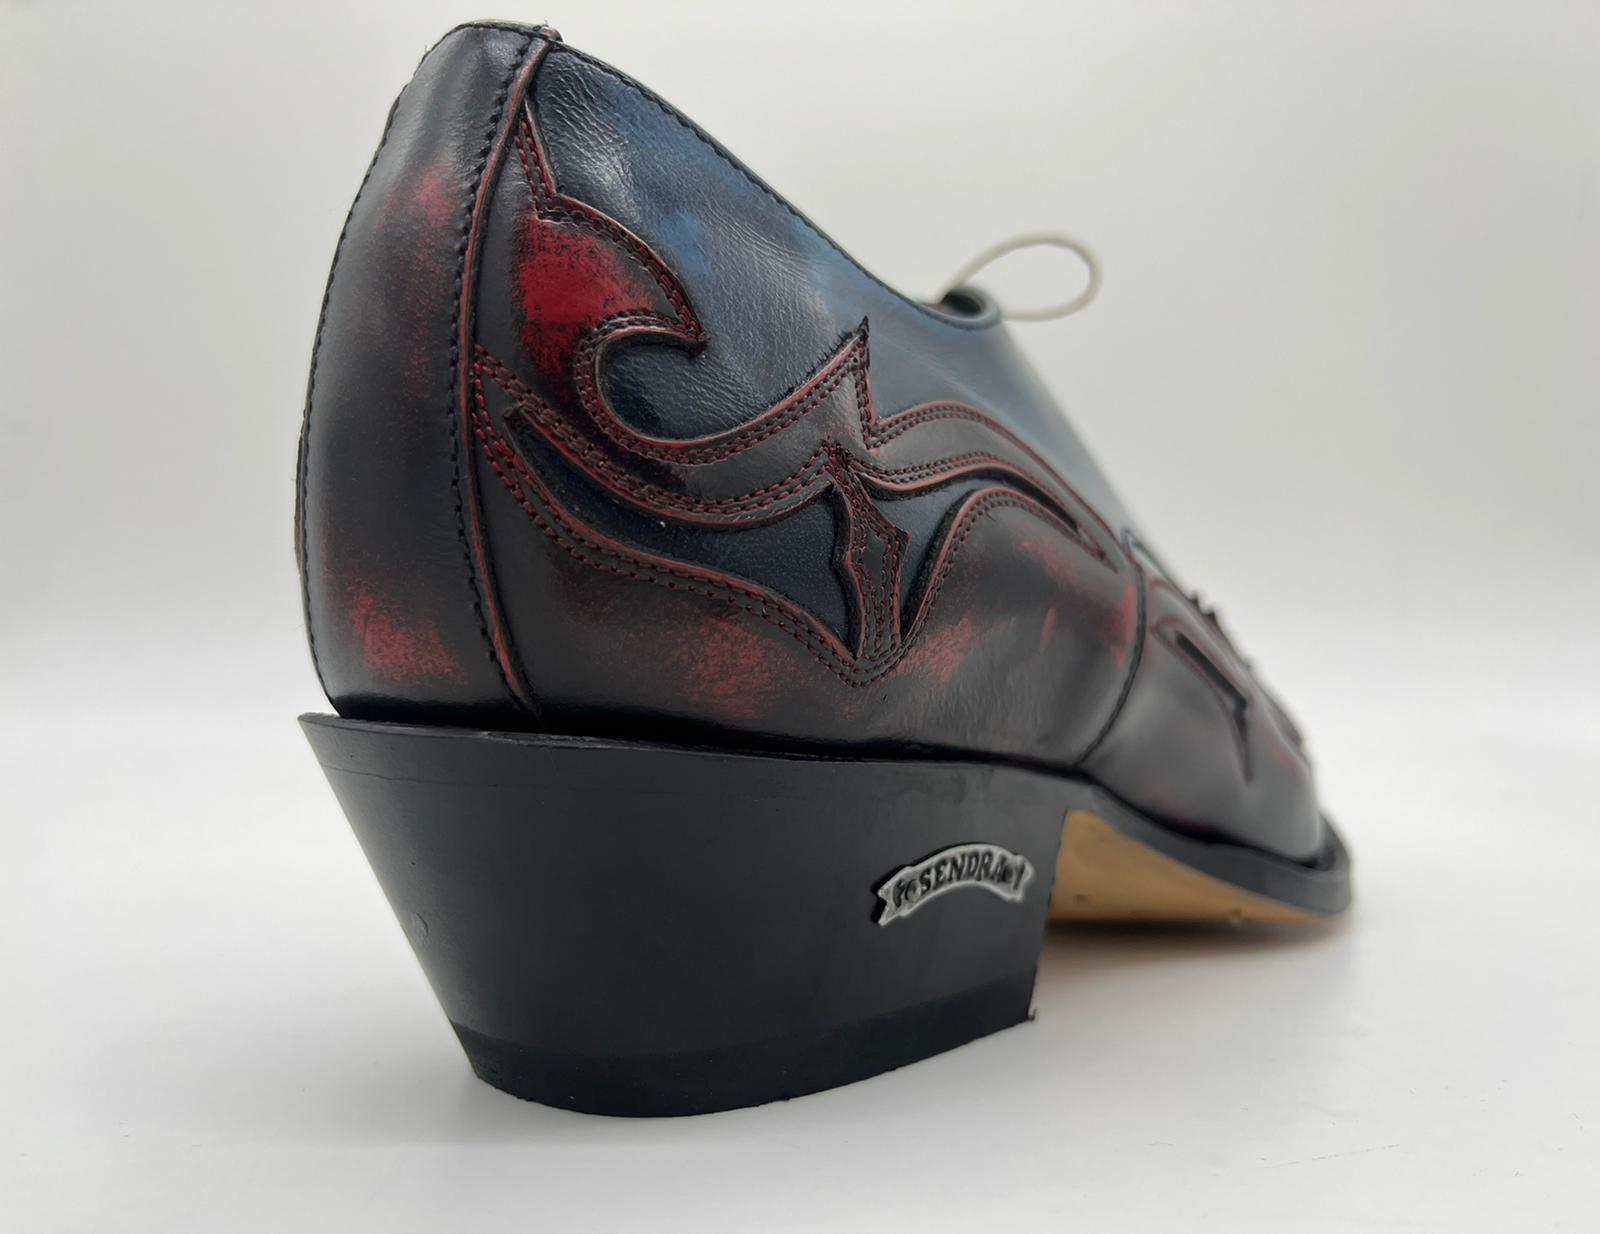 Sendra Boots Stiefel 10066 Rot Blau Echtleder Western Schnürschuh Exklusiv & Limitiert